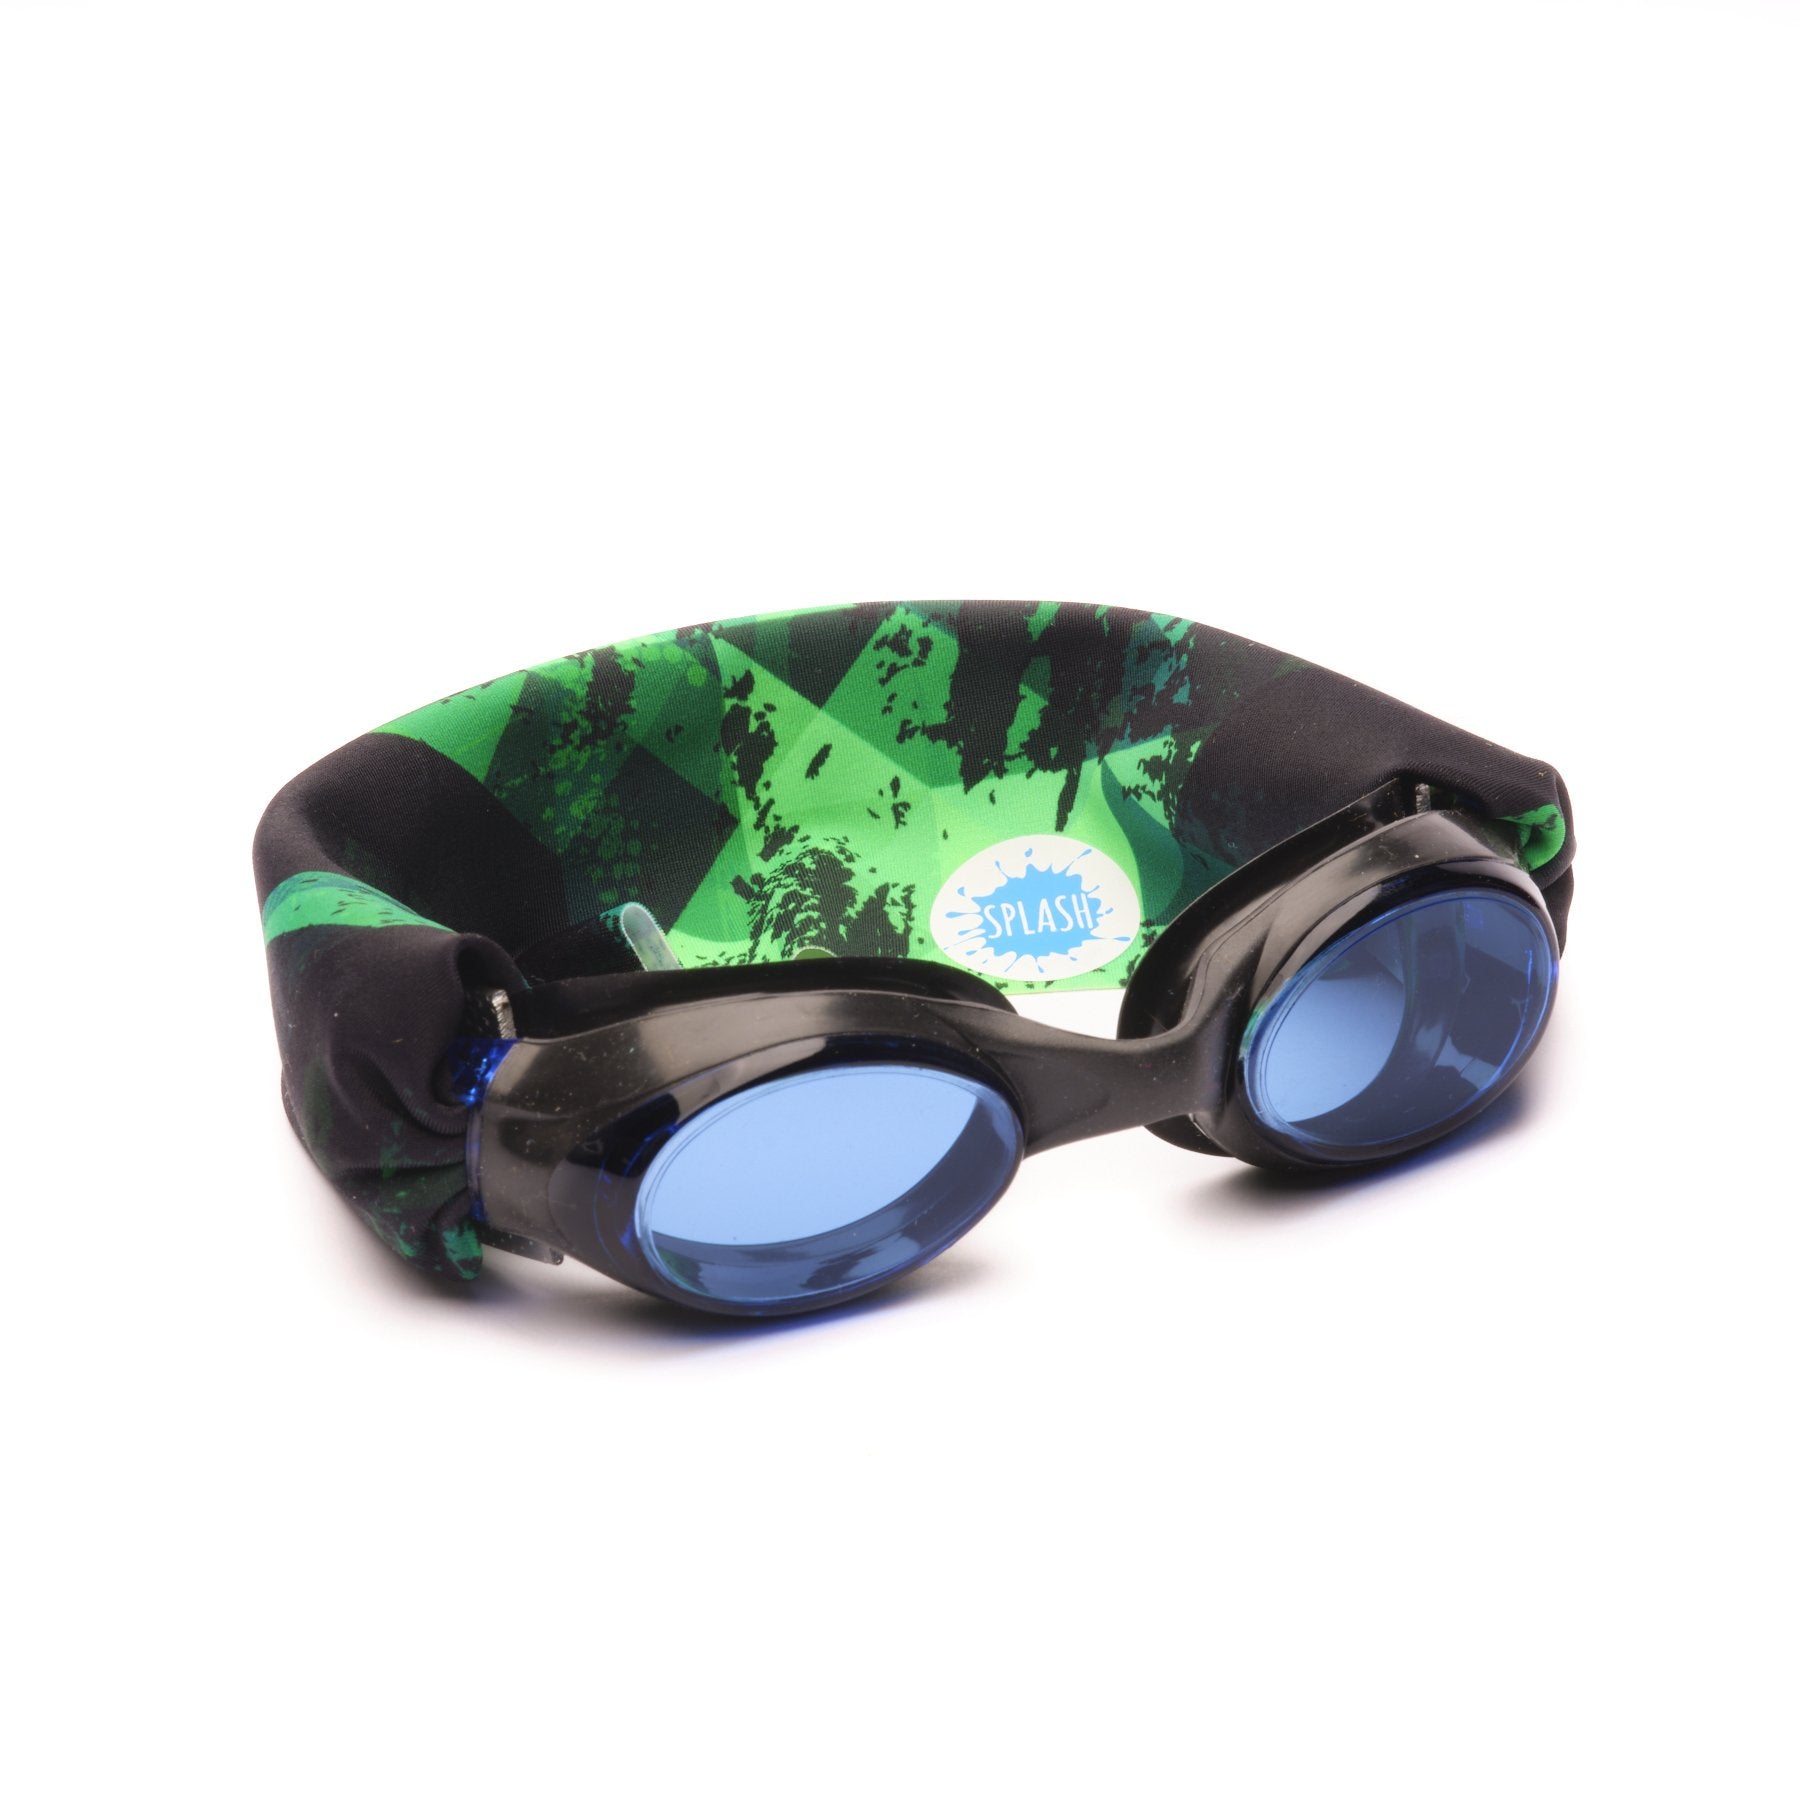 Green Fusion Swim Goggles